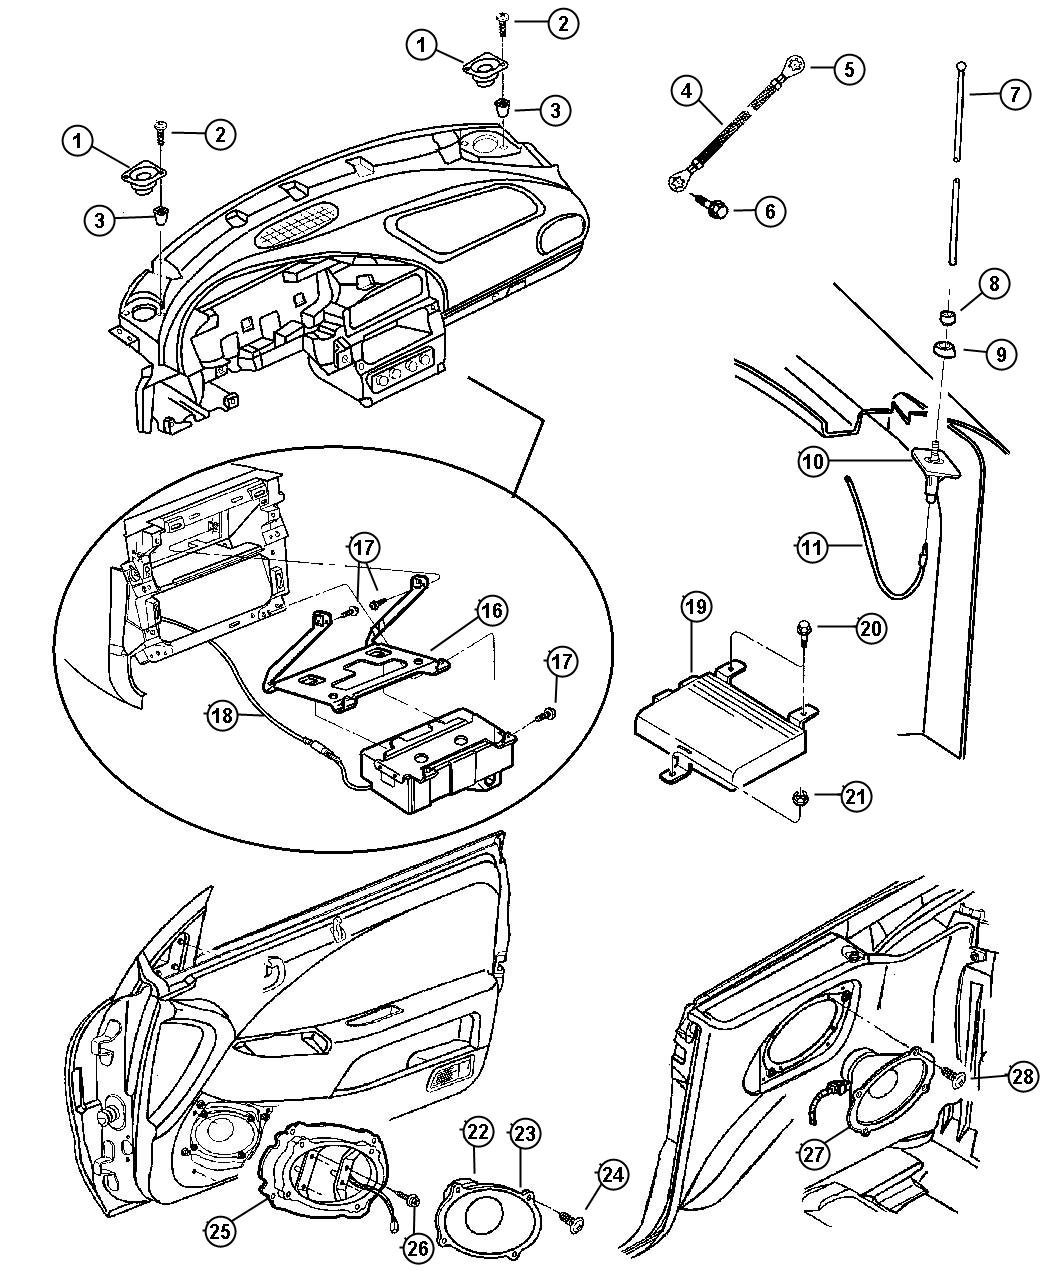 1997 Chrysler sebring speaker covers